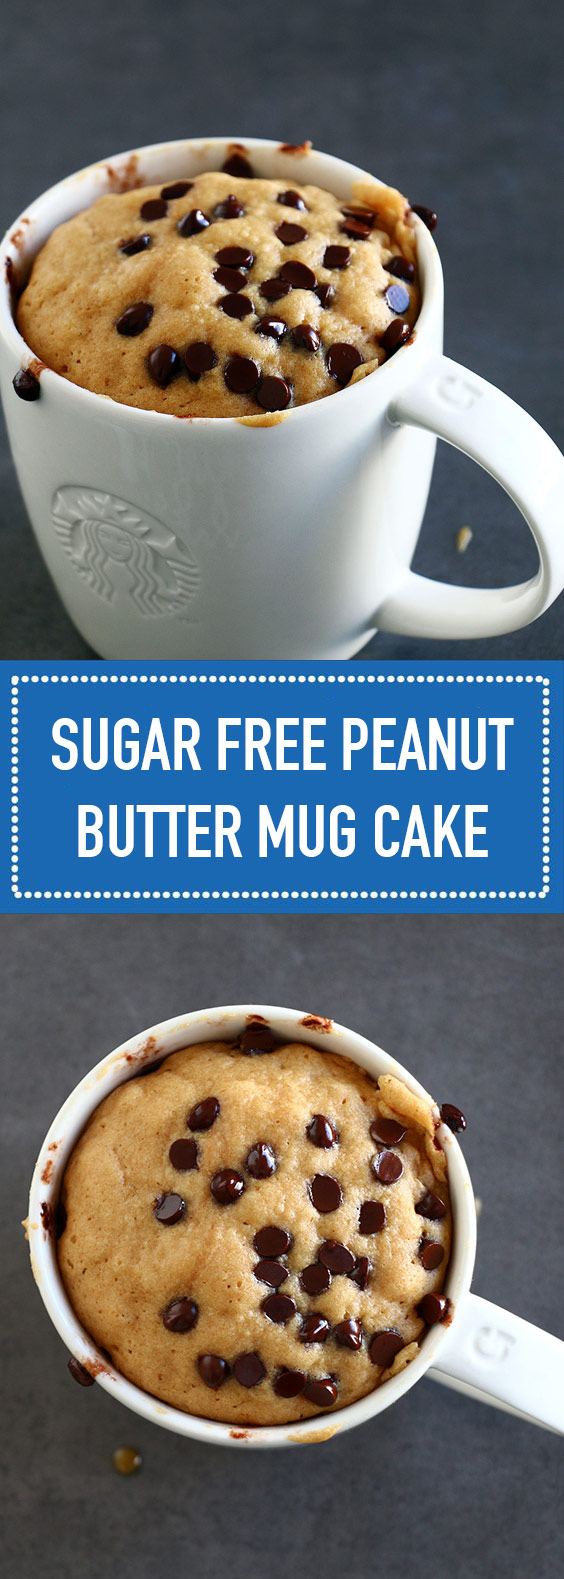 Sugar Free Peanut Butter Mug Cake (Vegan + Gluten Free)